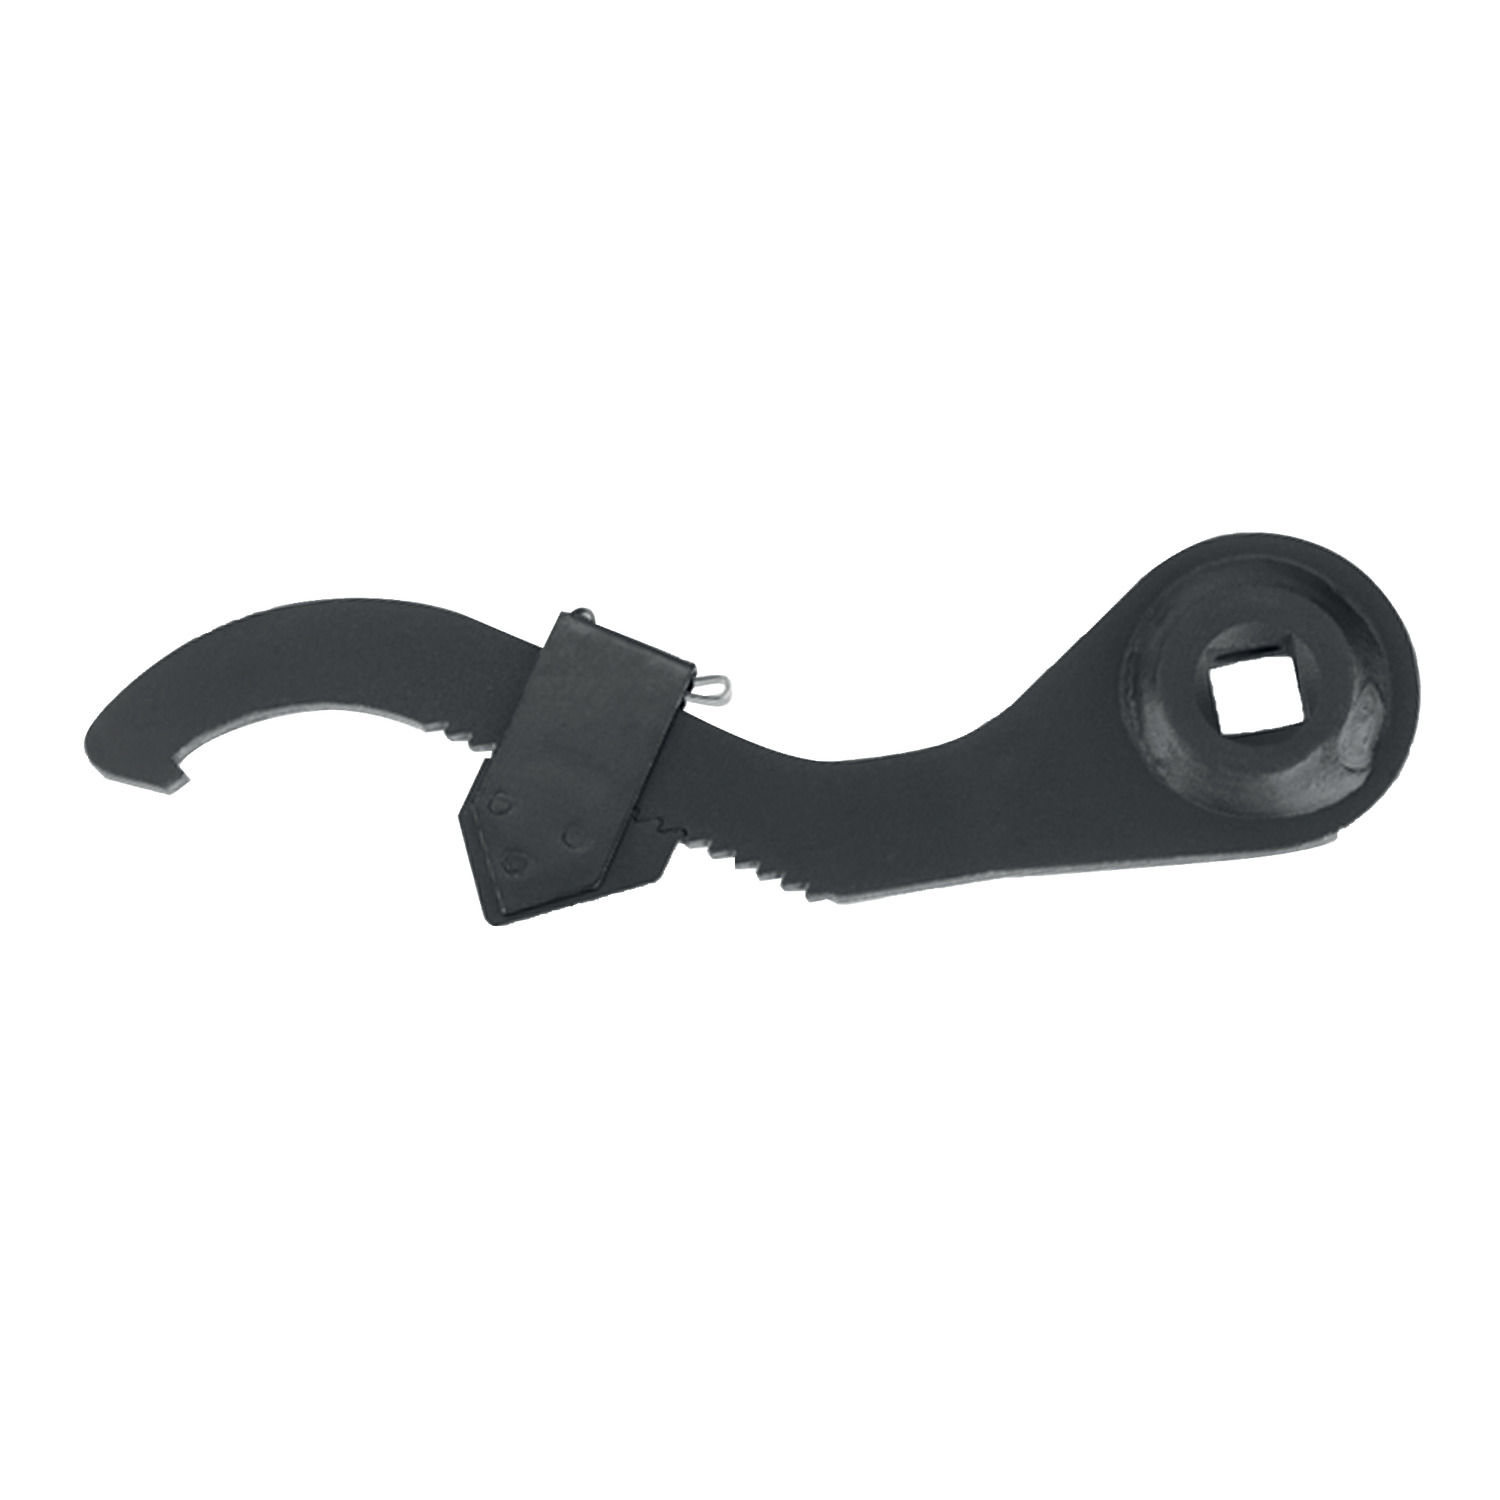 95105 Adjustable Hook Spanner